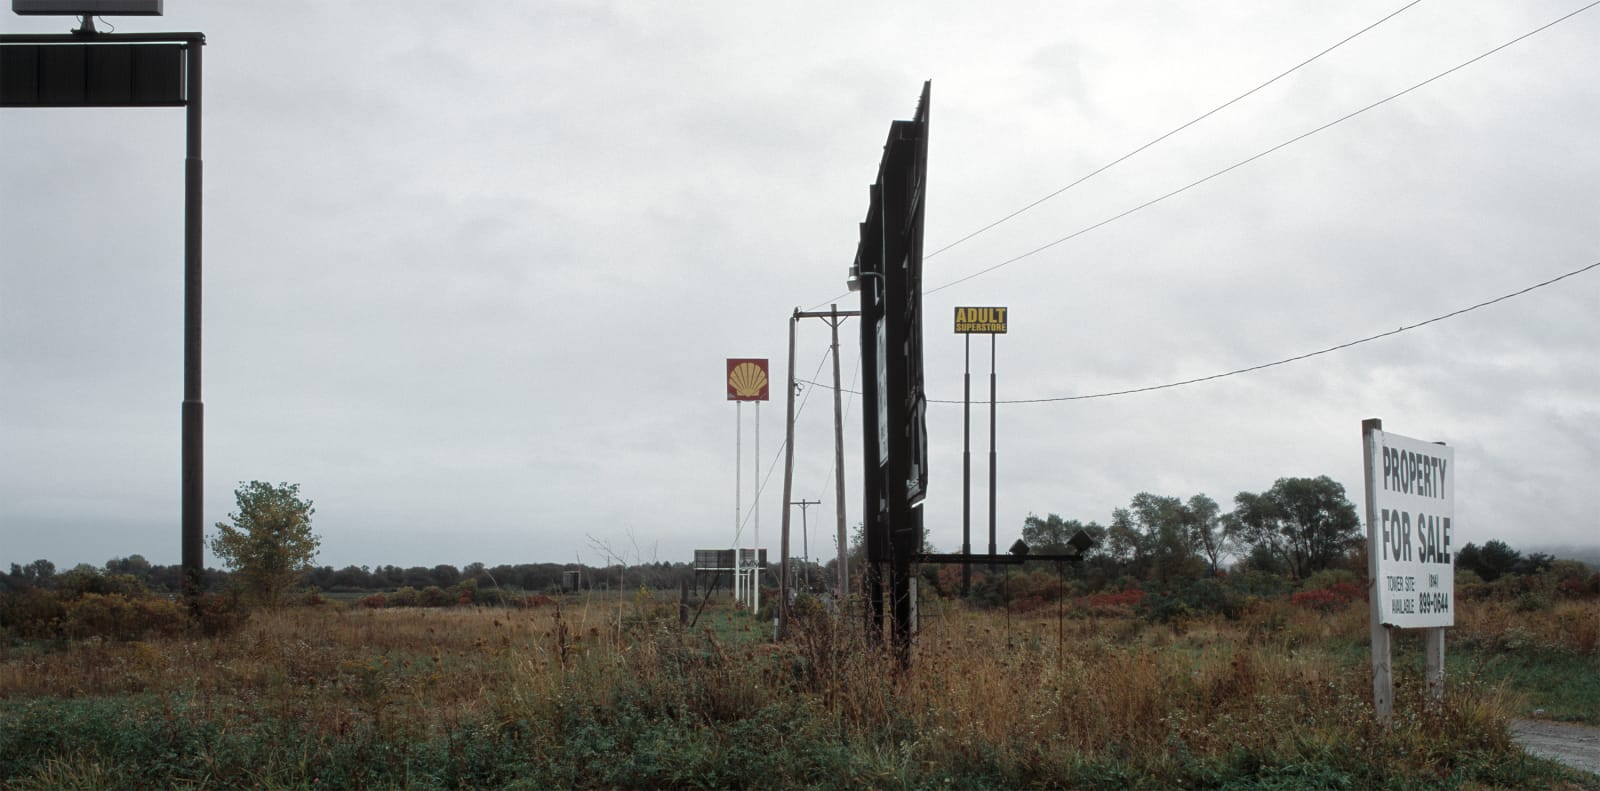 Jeff Brouws, Franchised Landscape #22, 2005